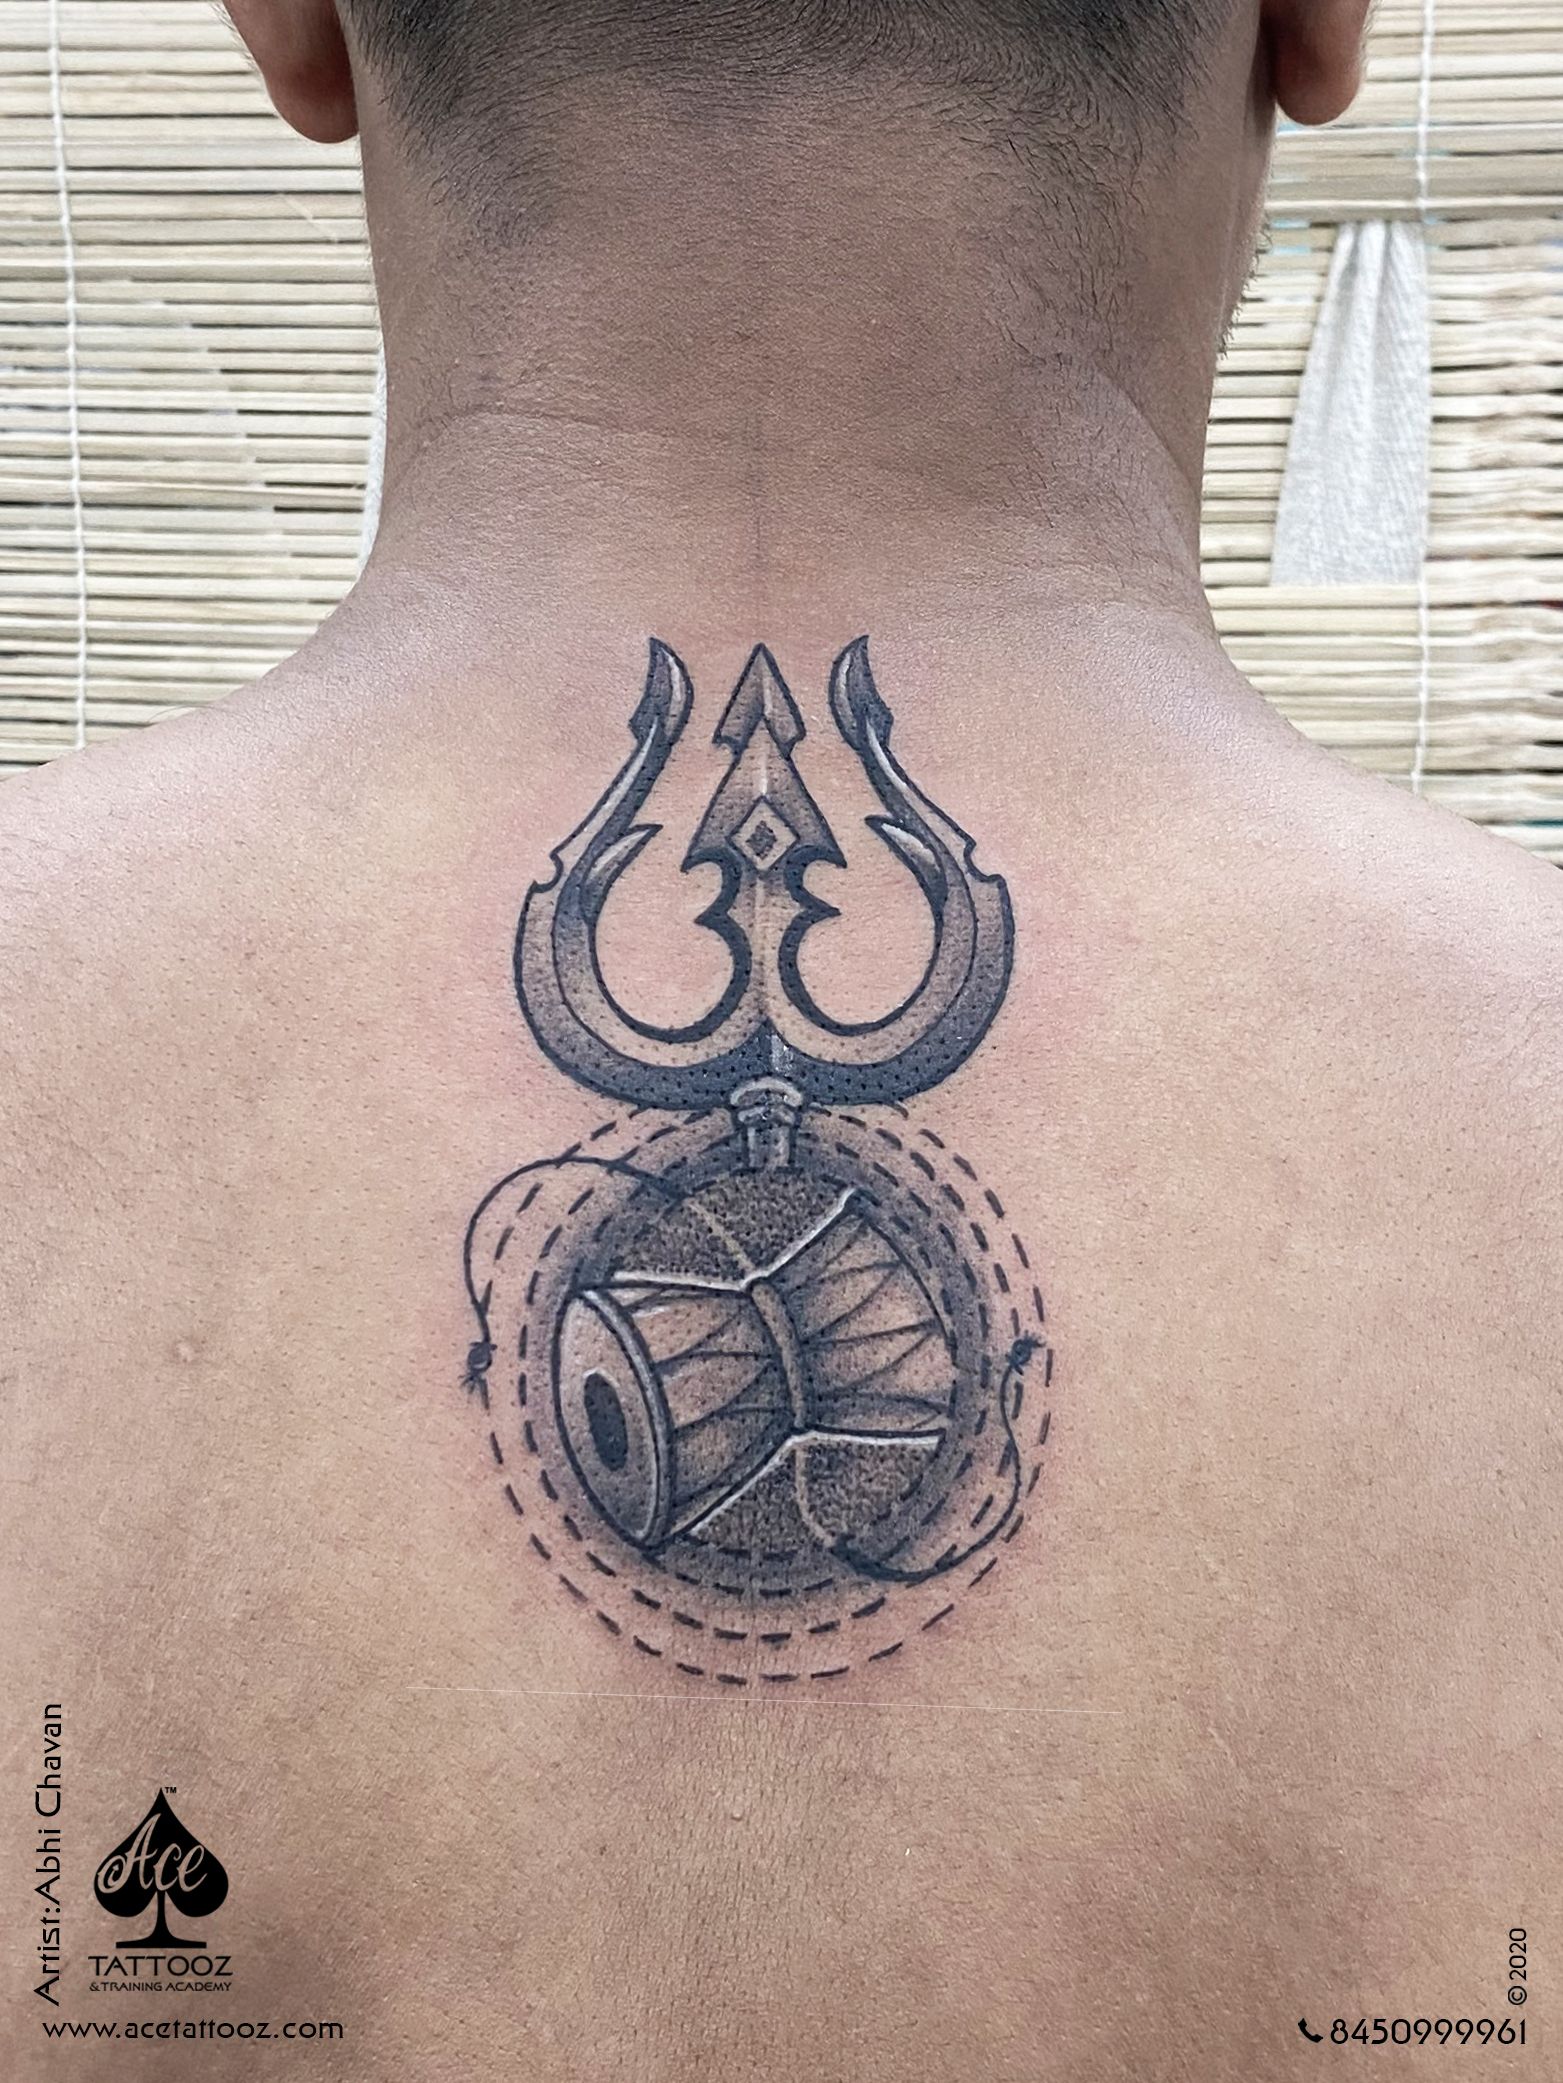 trishul tattoo on back